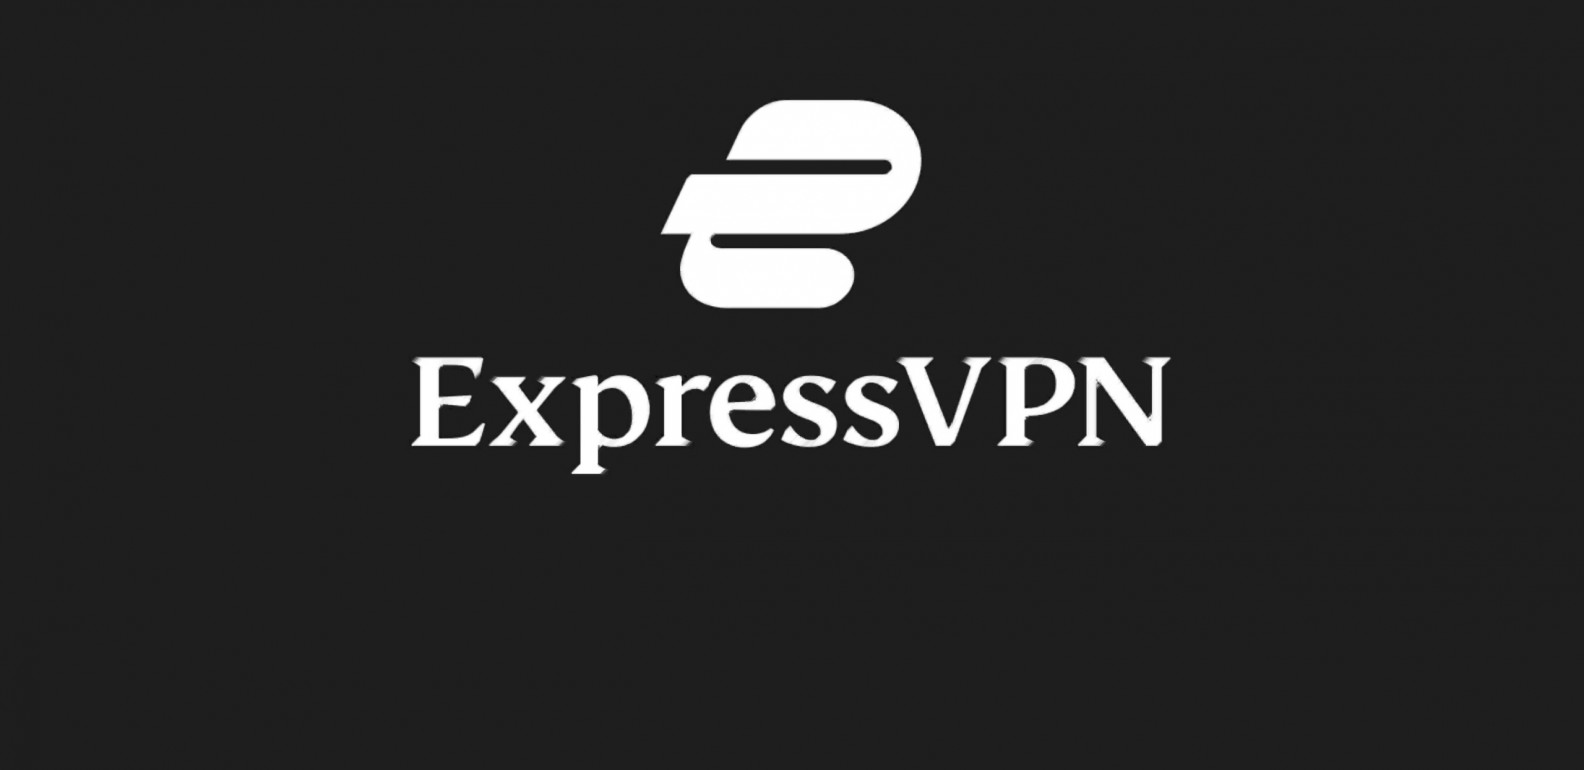 Can you still trust ExpressVPN?